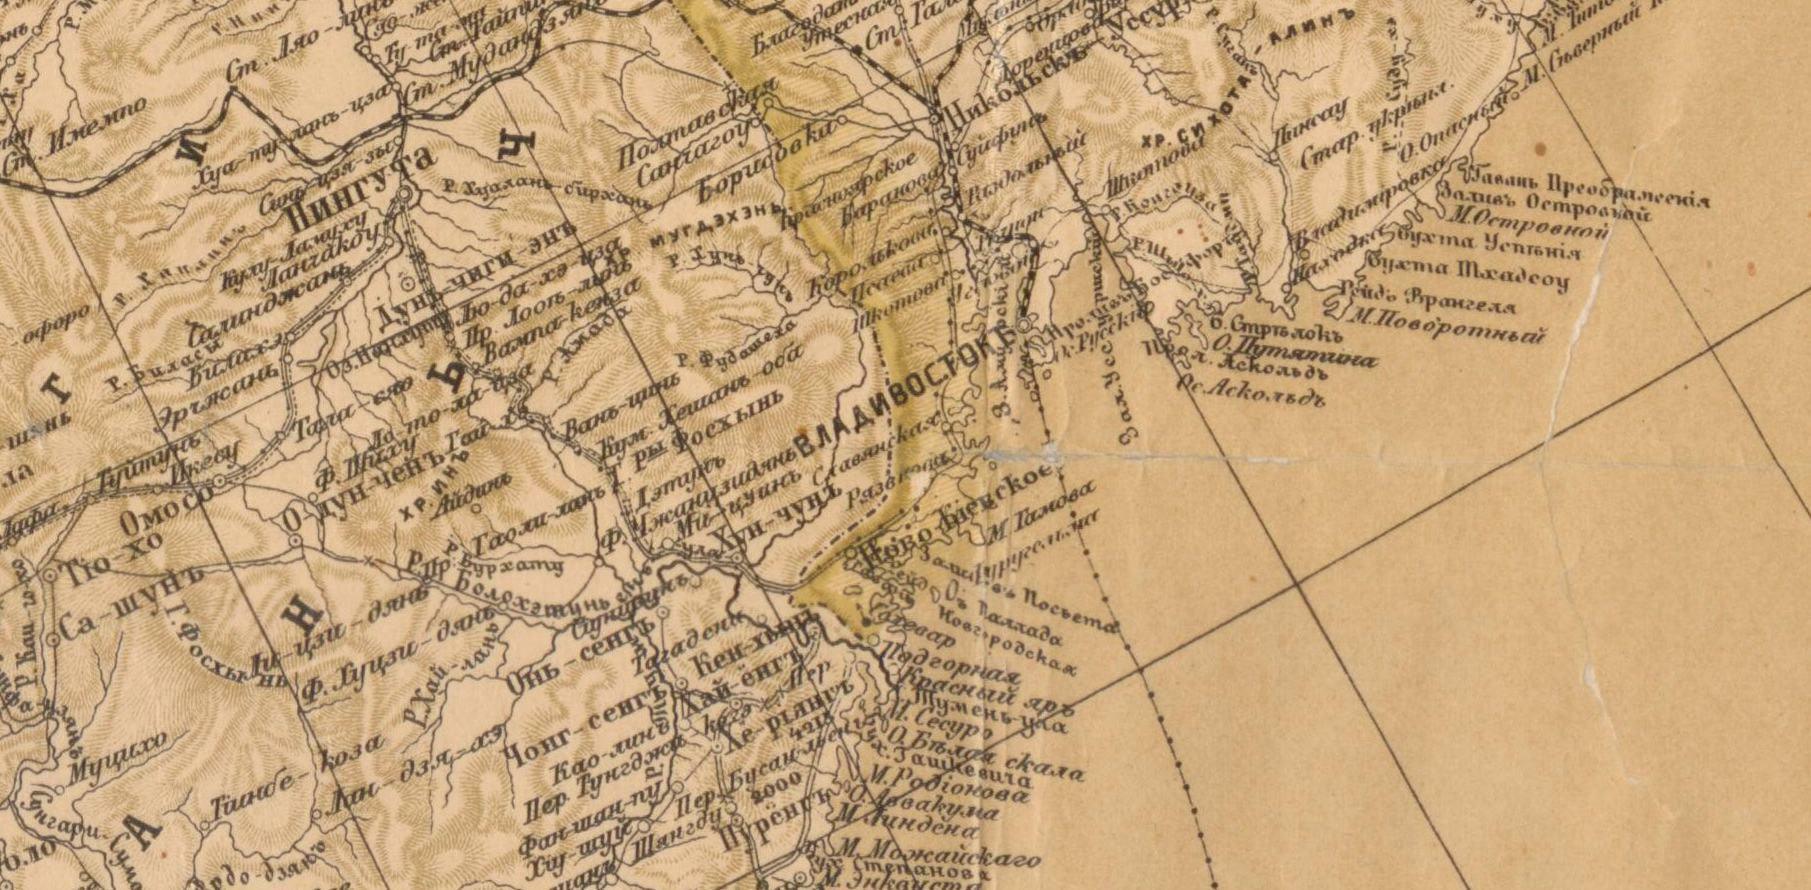 Дальний восток в начале 20 века. Карта дальнего Востока 1904. Карта дальнего Востока 1904 года. Карта Владивостока 1904 года. Карта дальнего Востока Российской империи 1904.